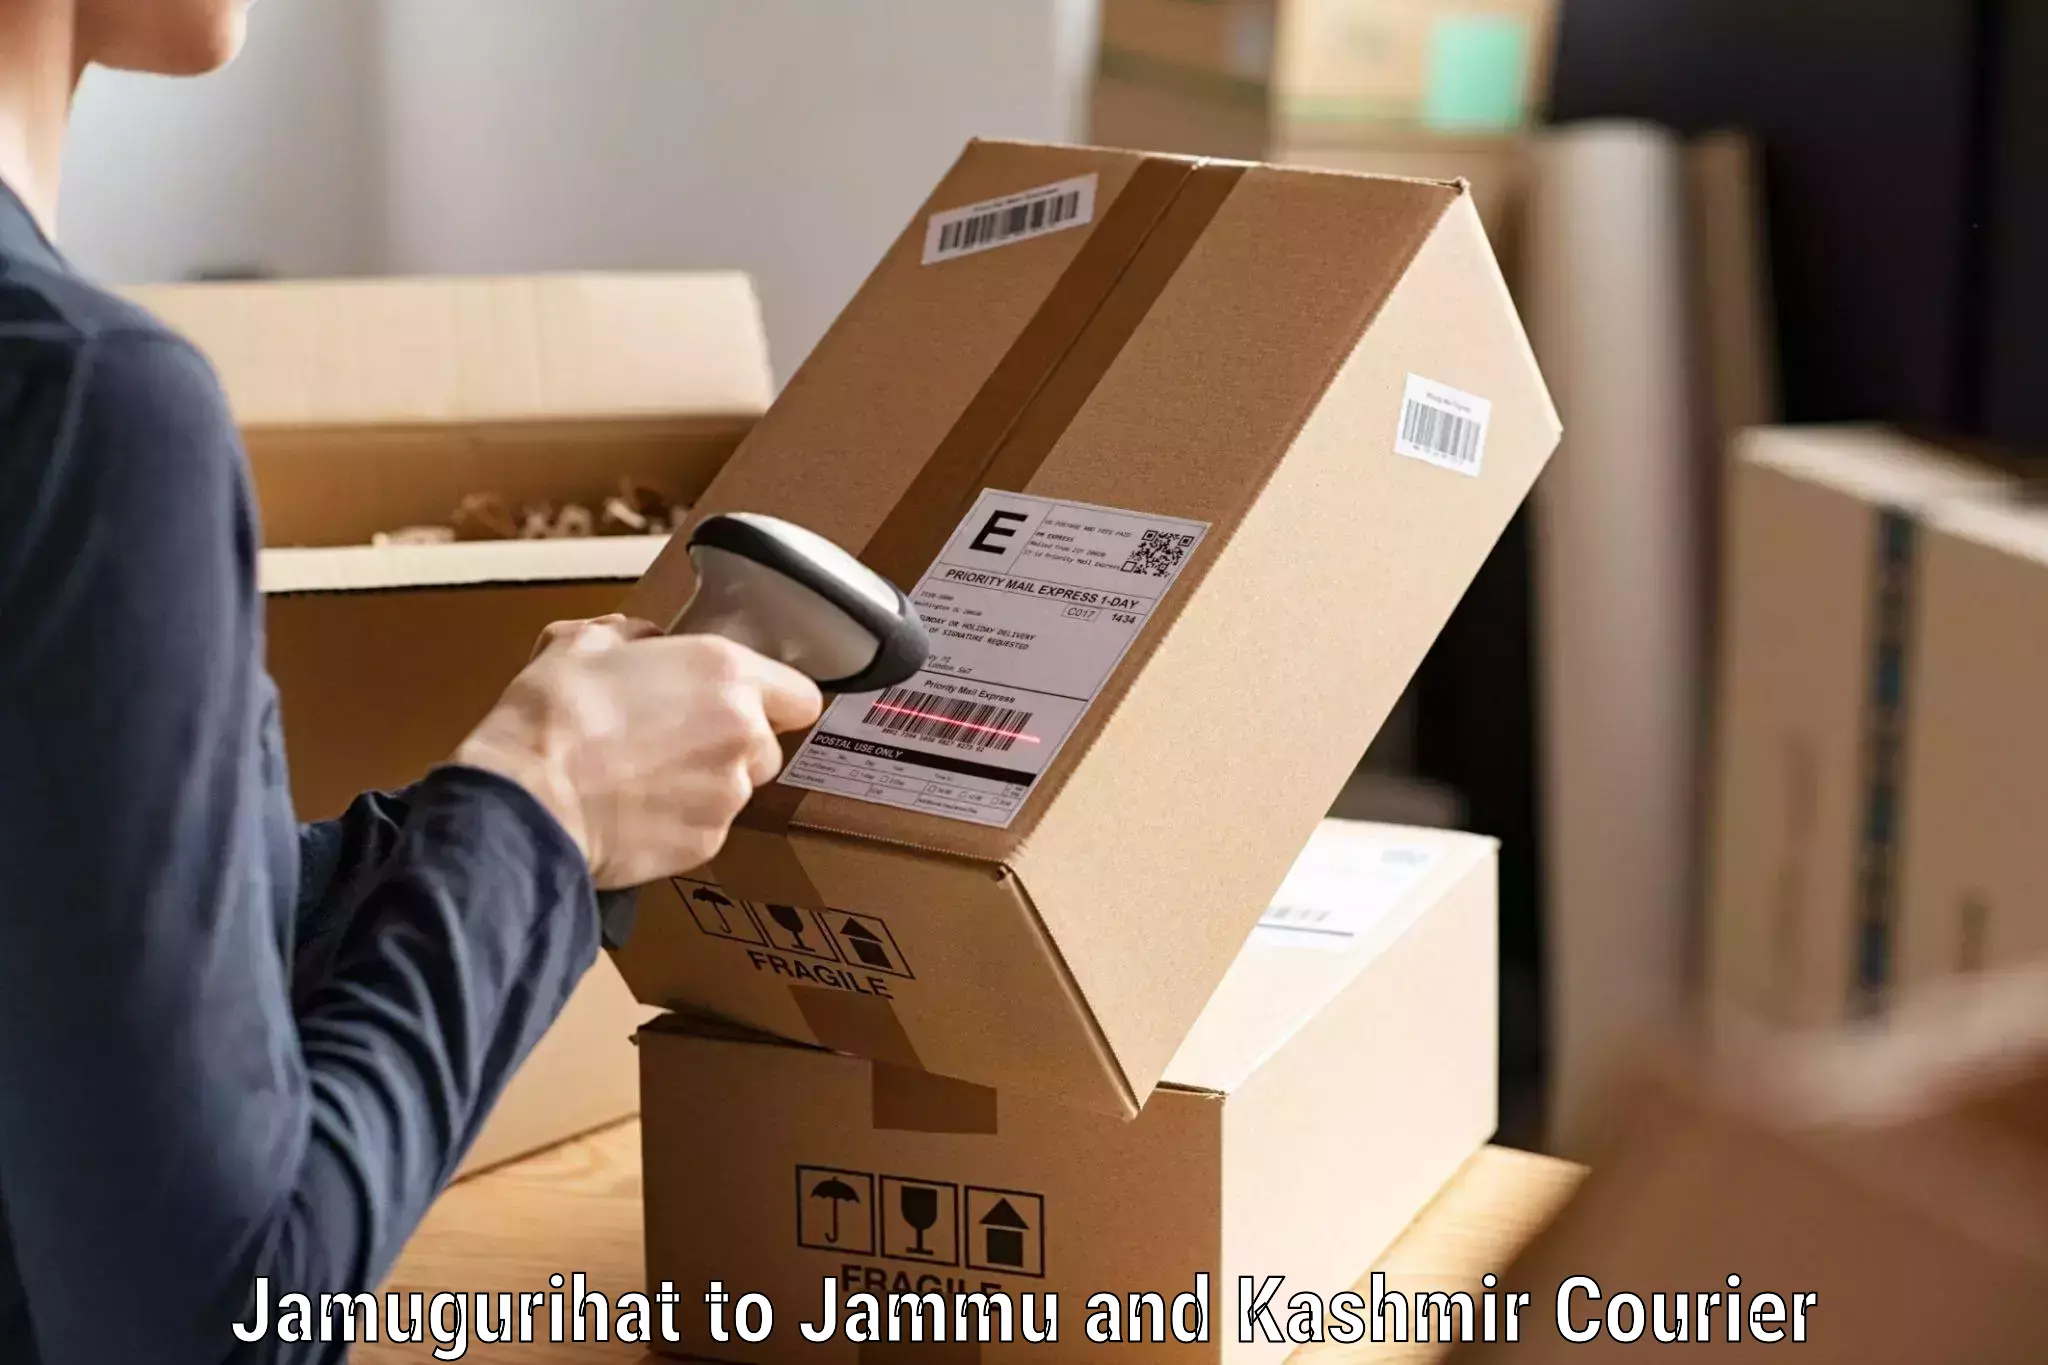 Global shipping networks Jamugurihat to Sunderbani